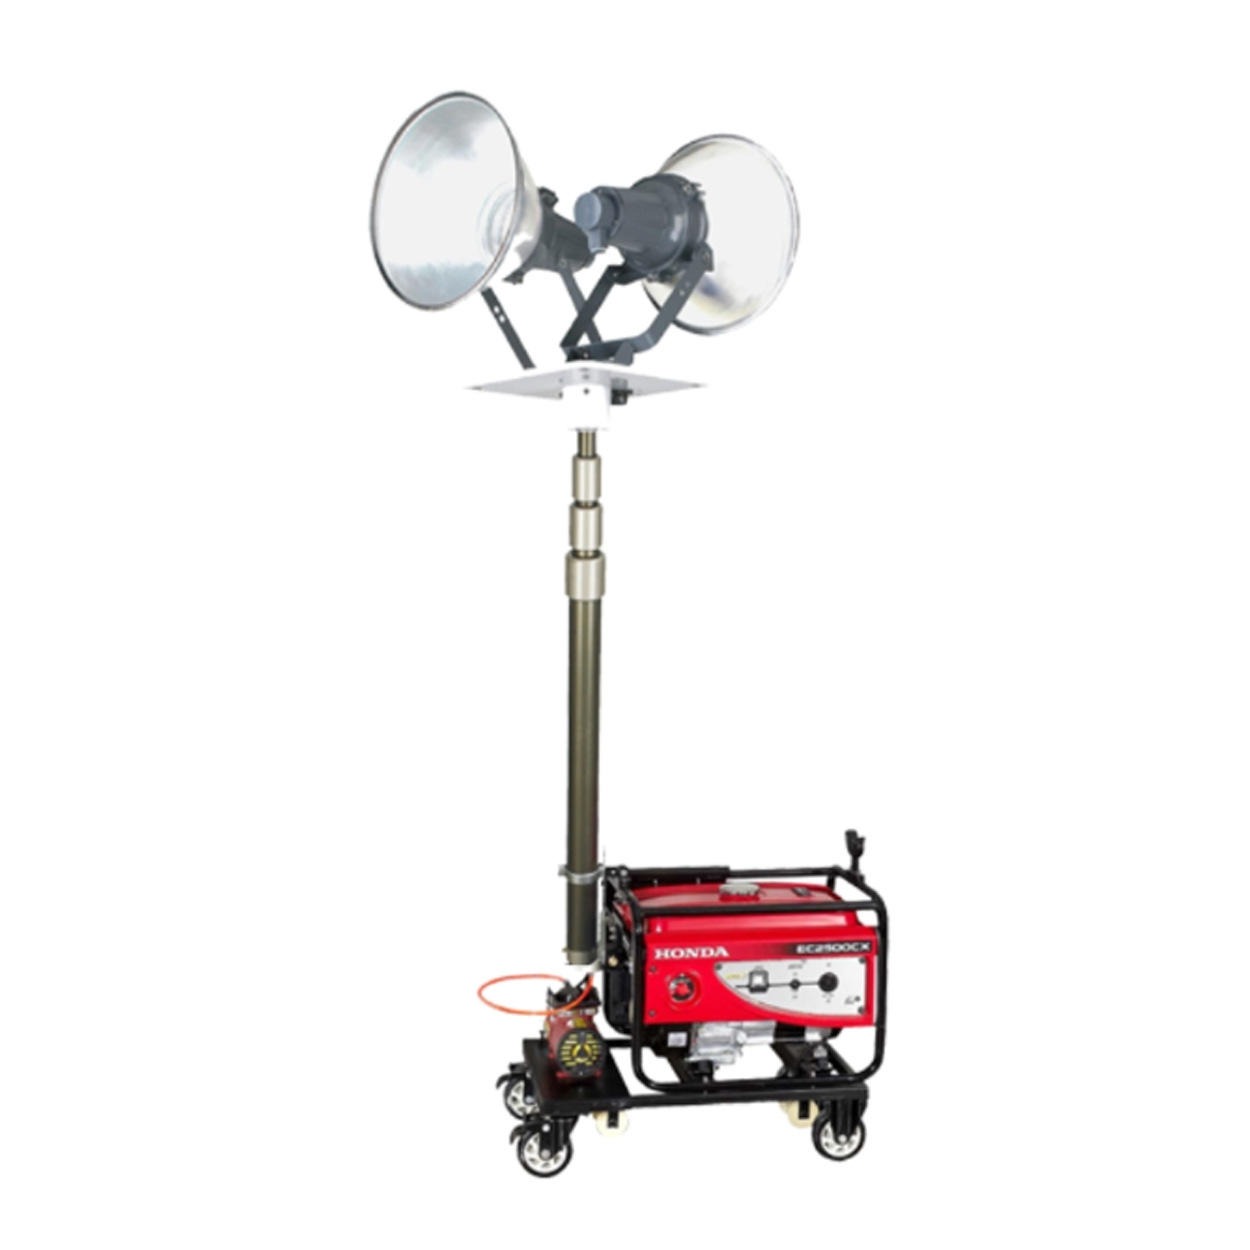 移动应急抢修抢险照明装置  GAD505升降式照明装置  大型施工作业照明装置  夜间野外工作照明车